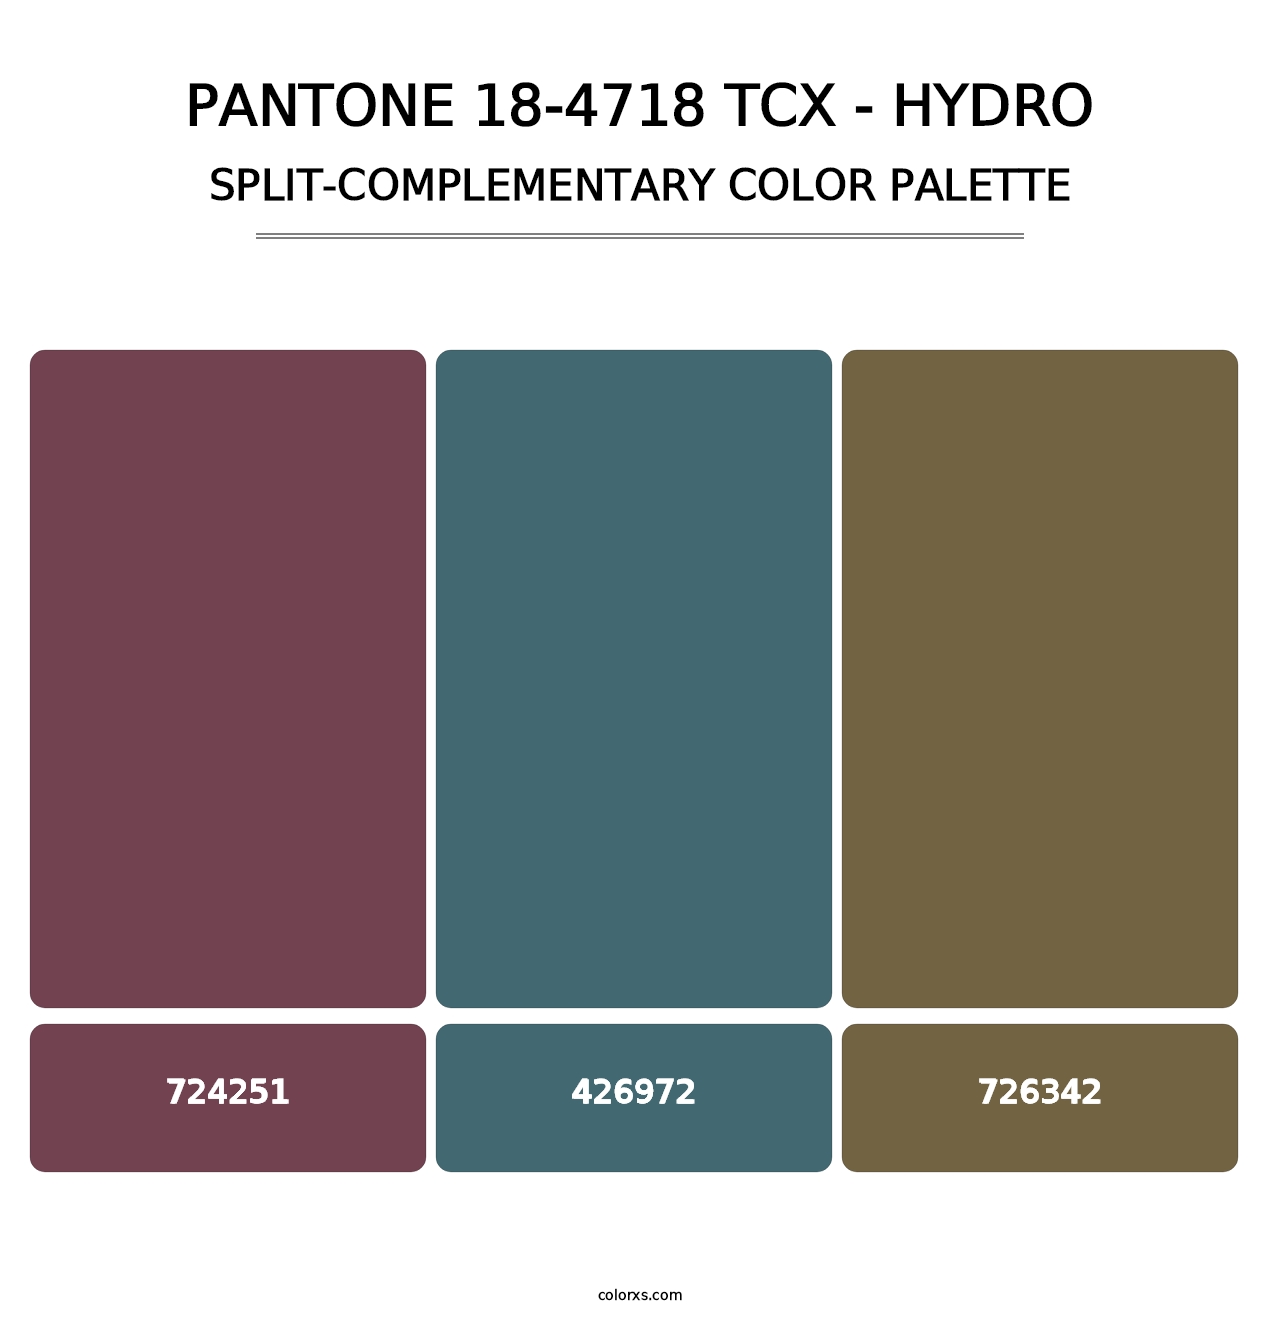 PANTONE 18-4718 TCX - Hydro - Split-Complementary Color Palette